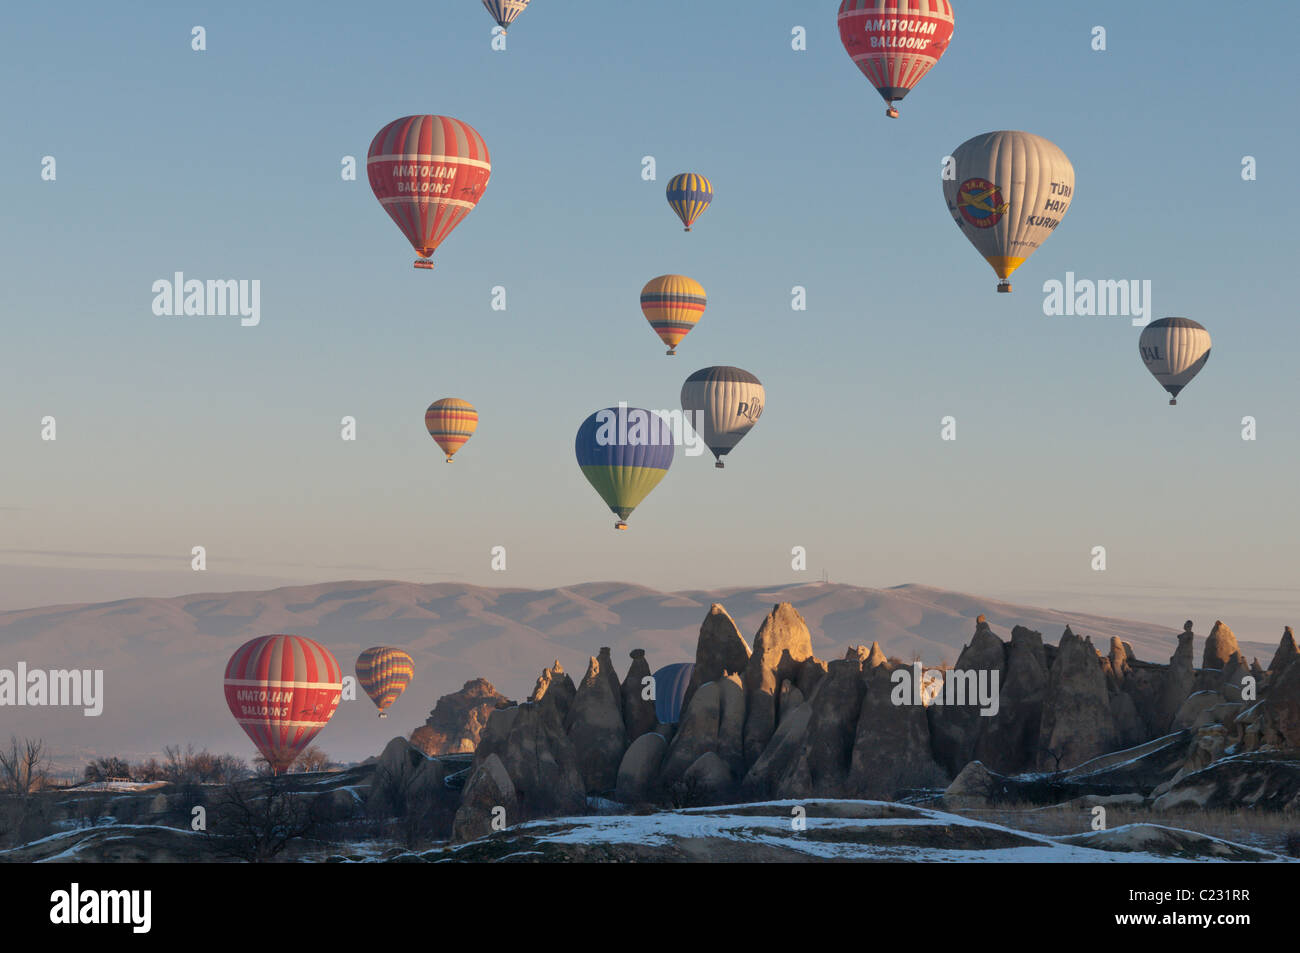 Hot Air Ballooning in Cappadocia,Central Anatolia of Turkey Stock Photo